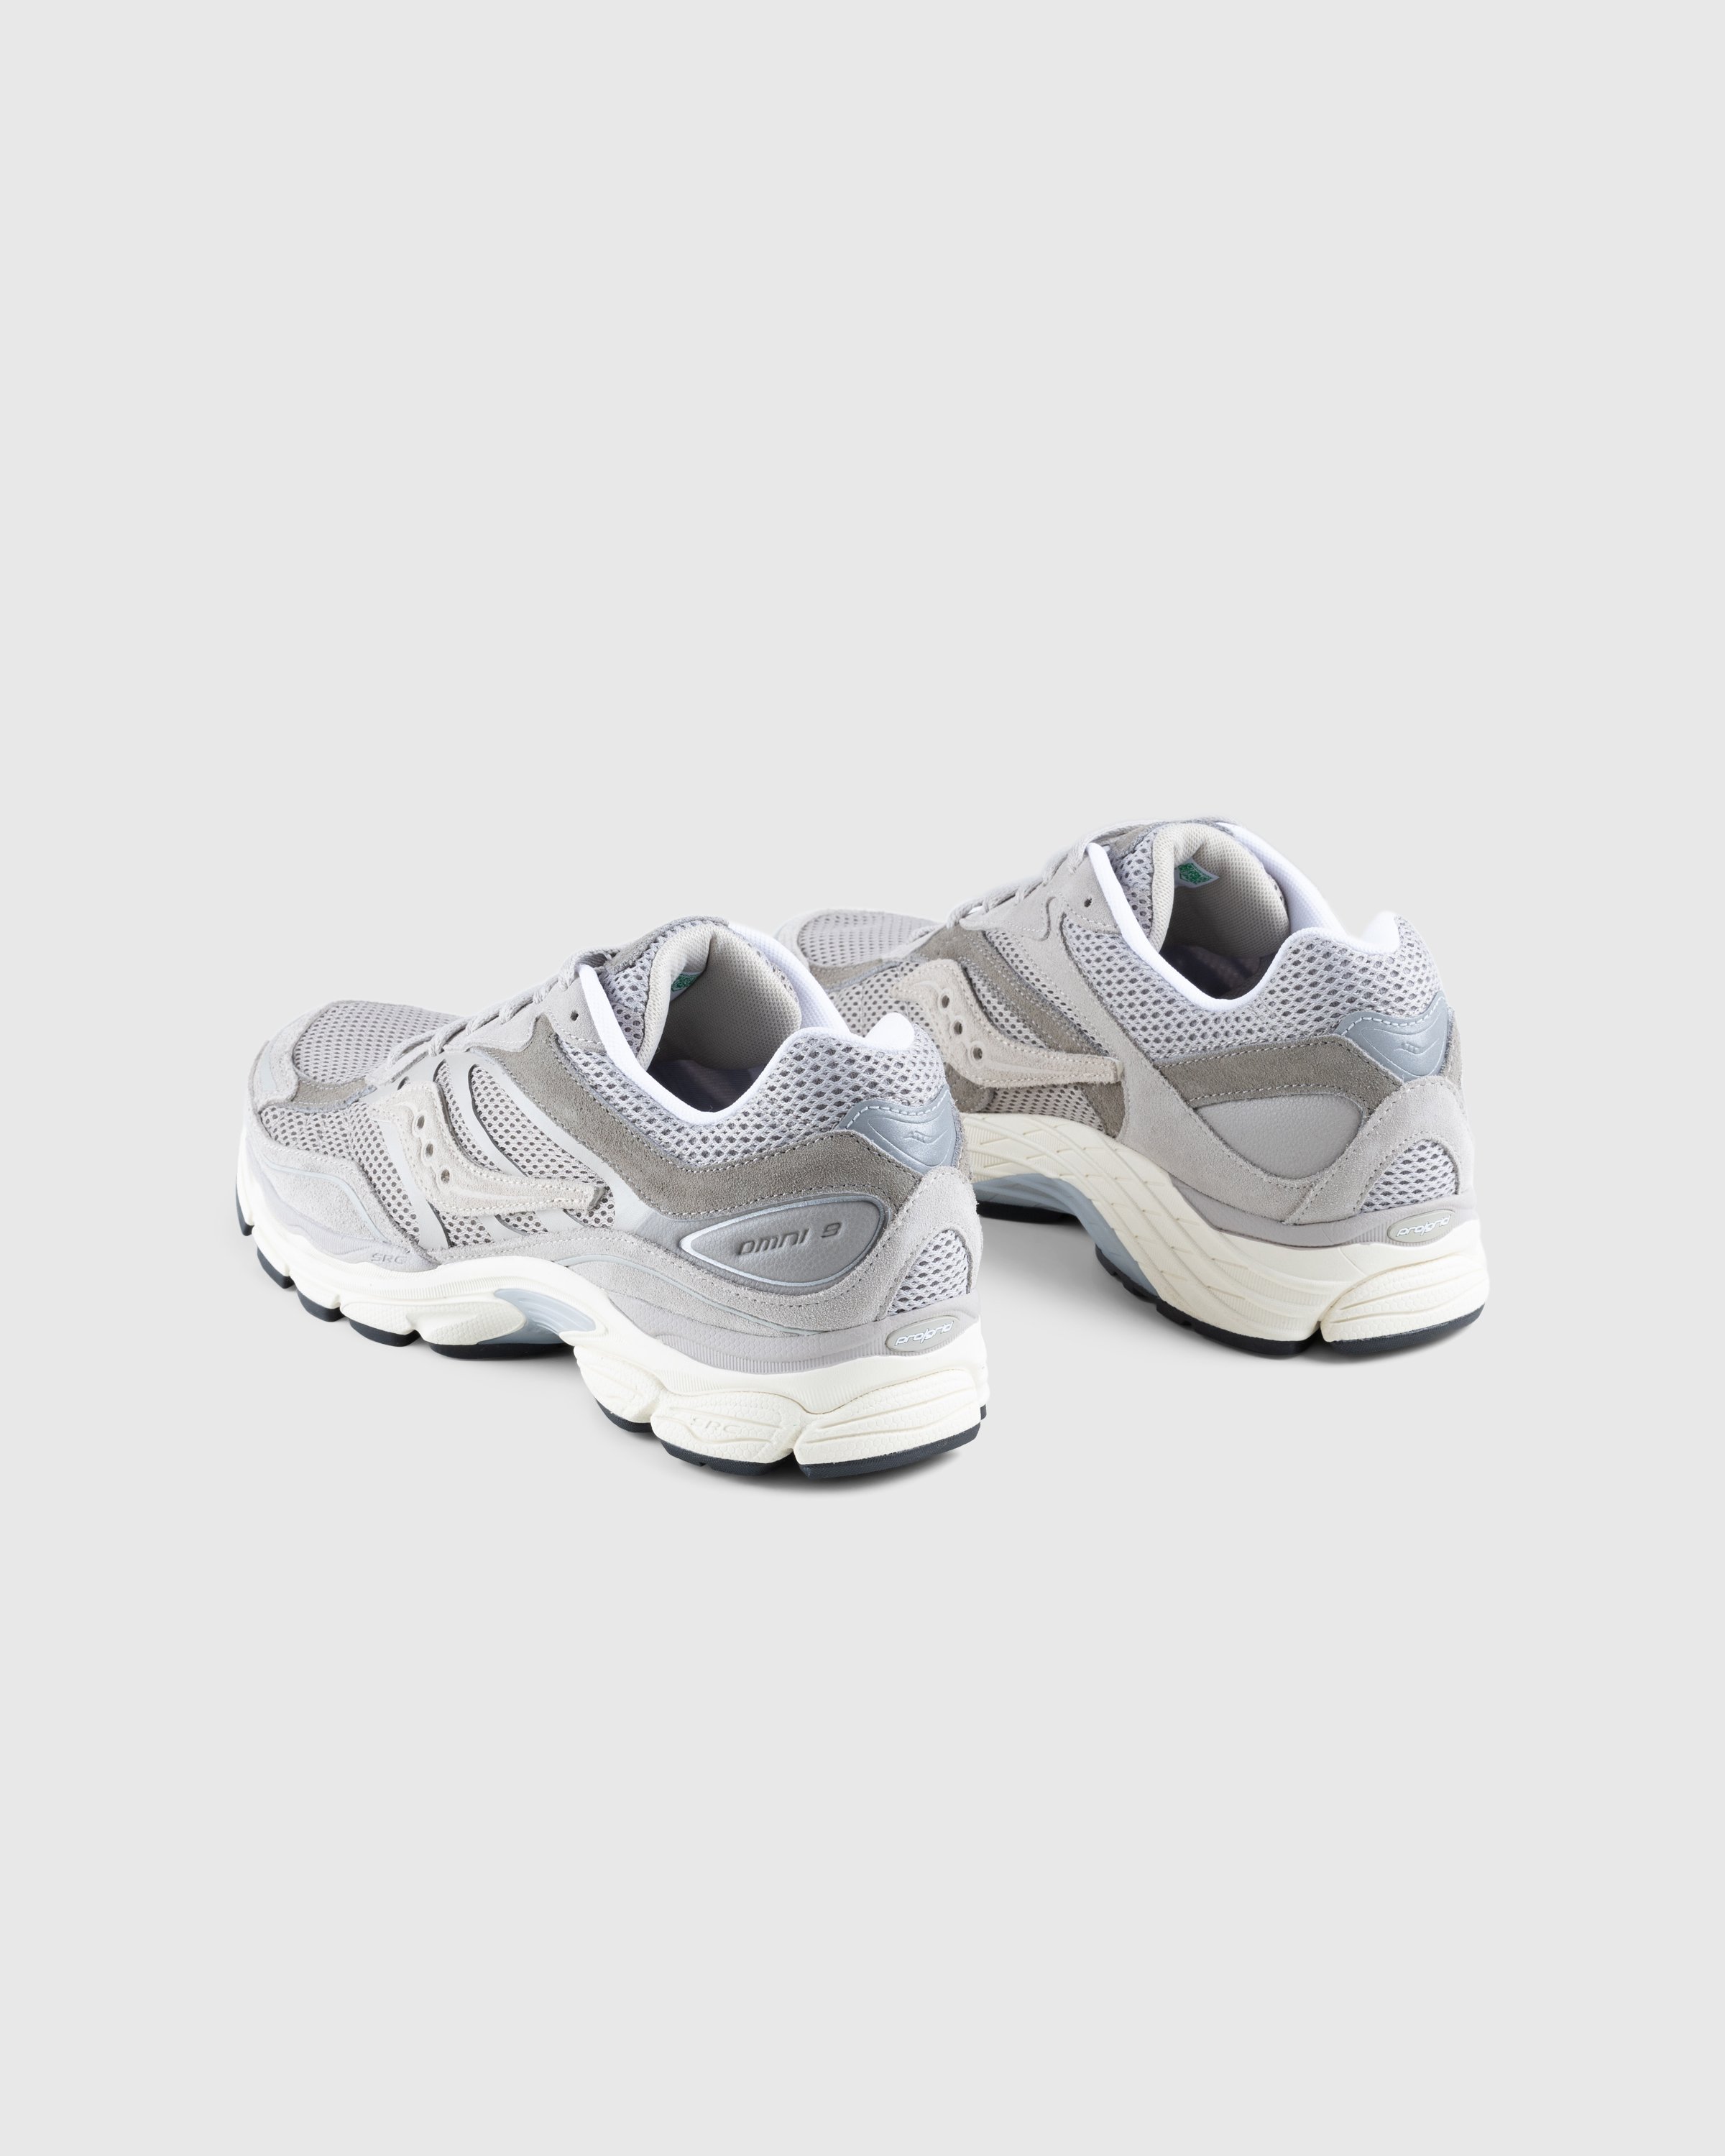 Saucony - ProGrid Omni 9 Gray - Footwear - Grey - Image 4